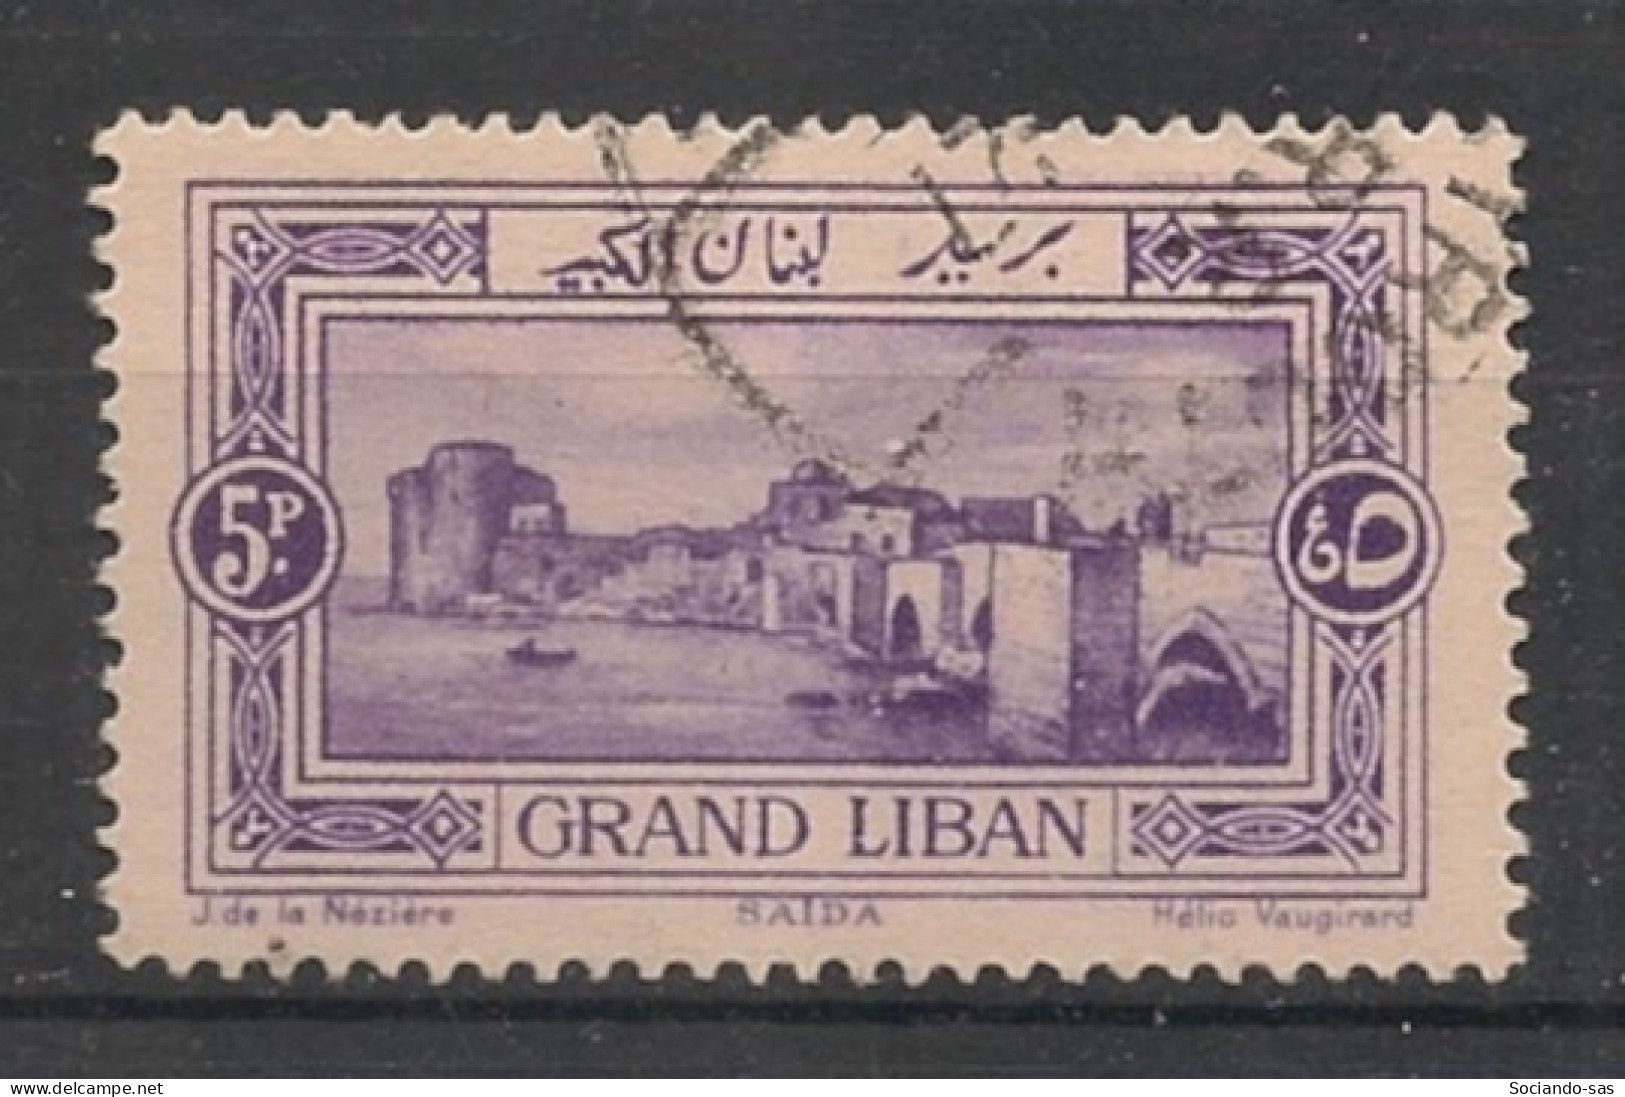 GRAND LIBAN - 1925 - N°YT. 60 - Saida 5pi Violet - Oblitéré / Used - Used Stamps